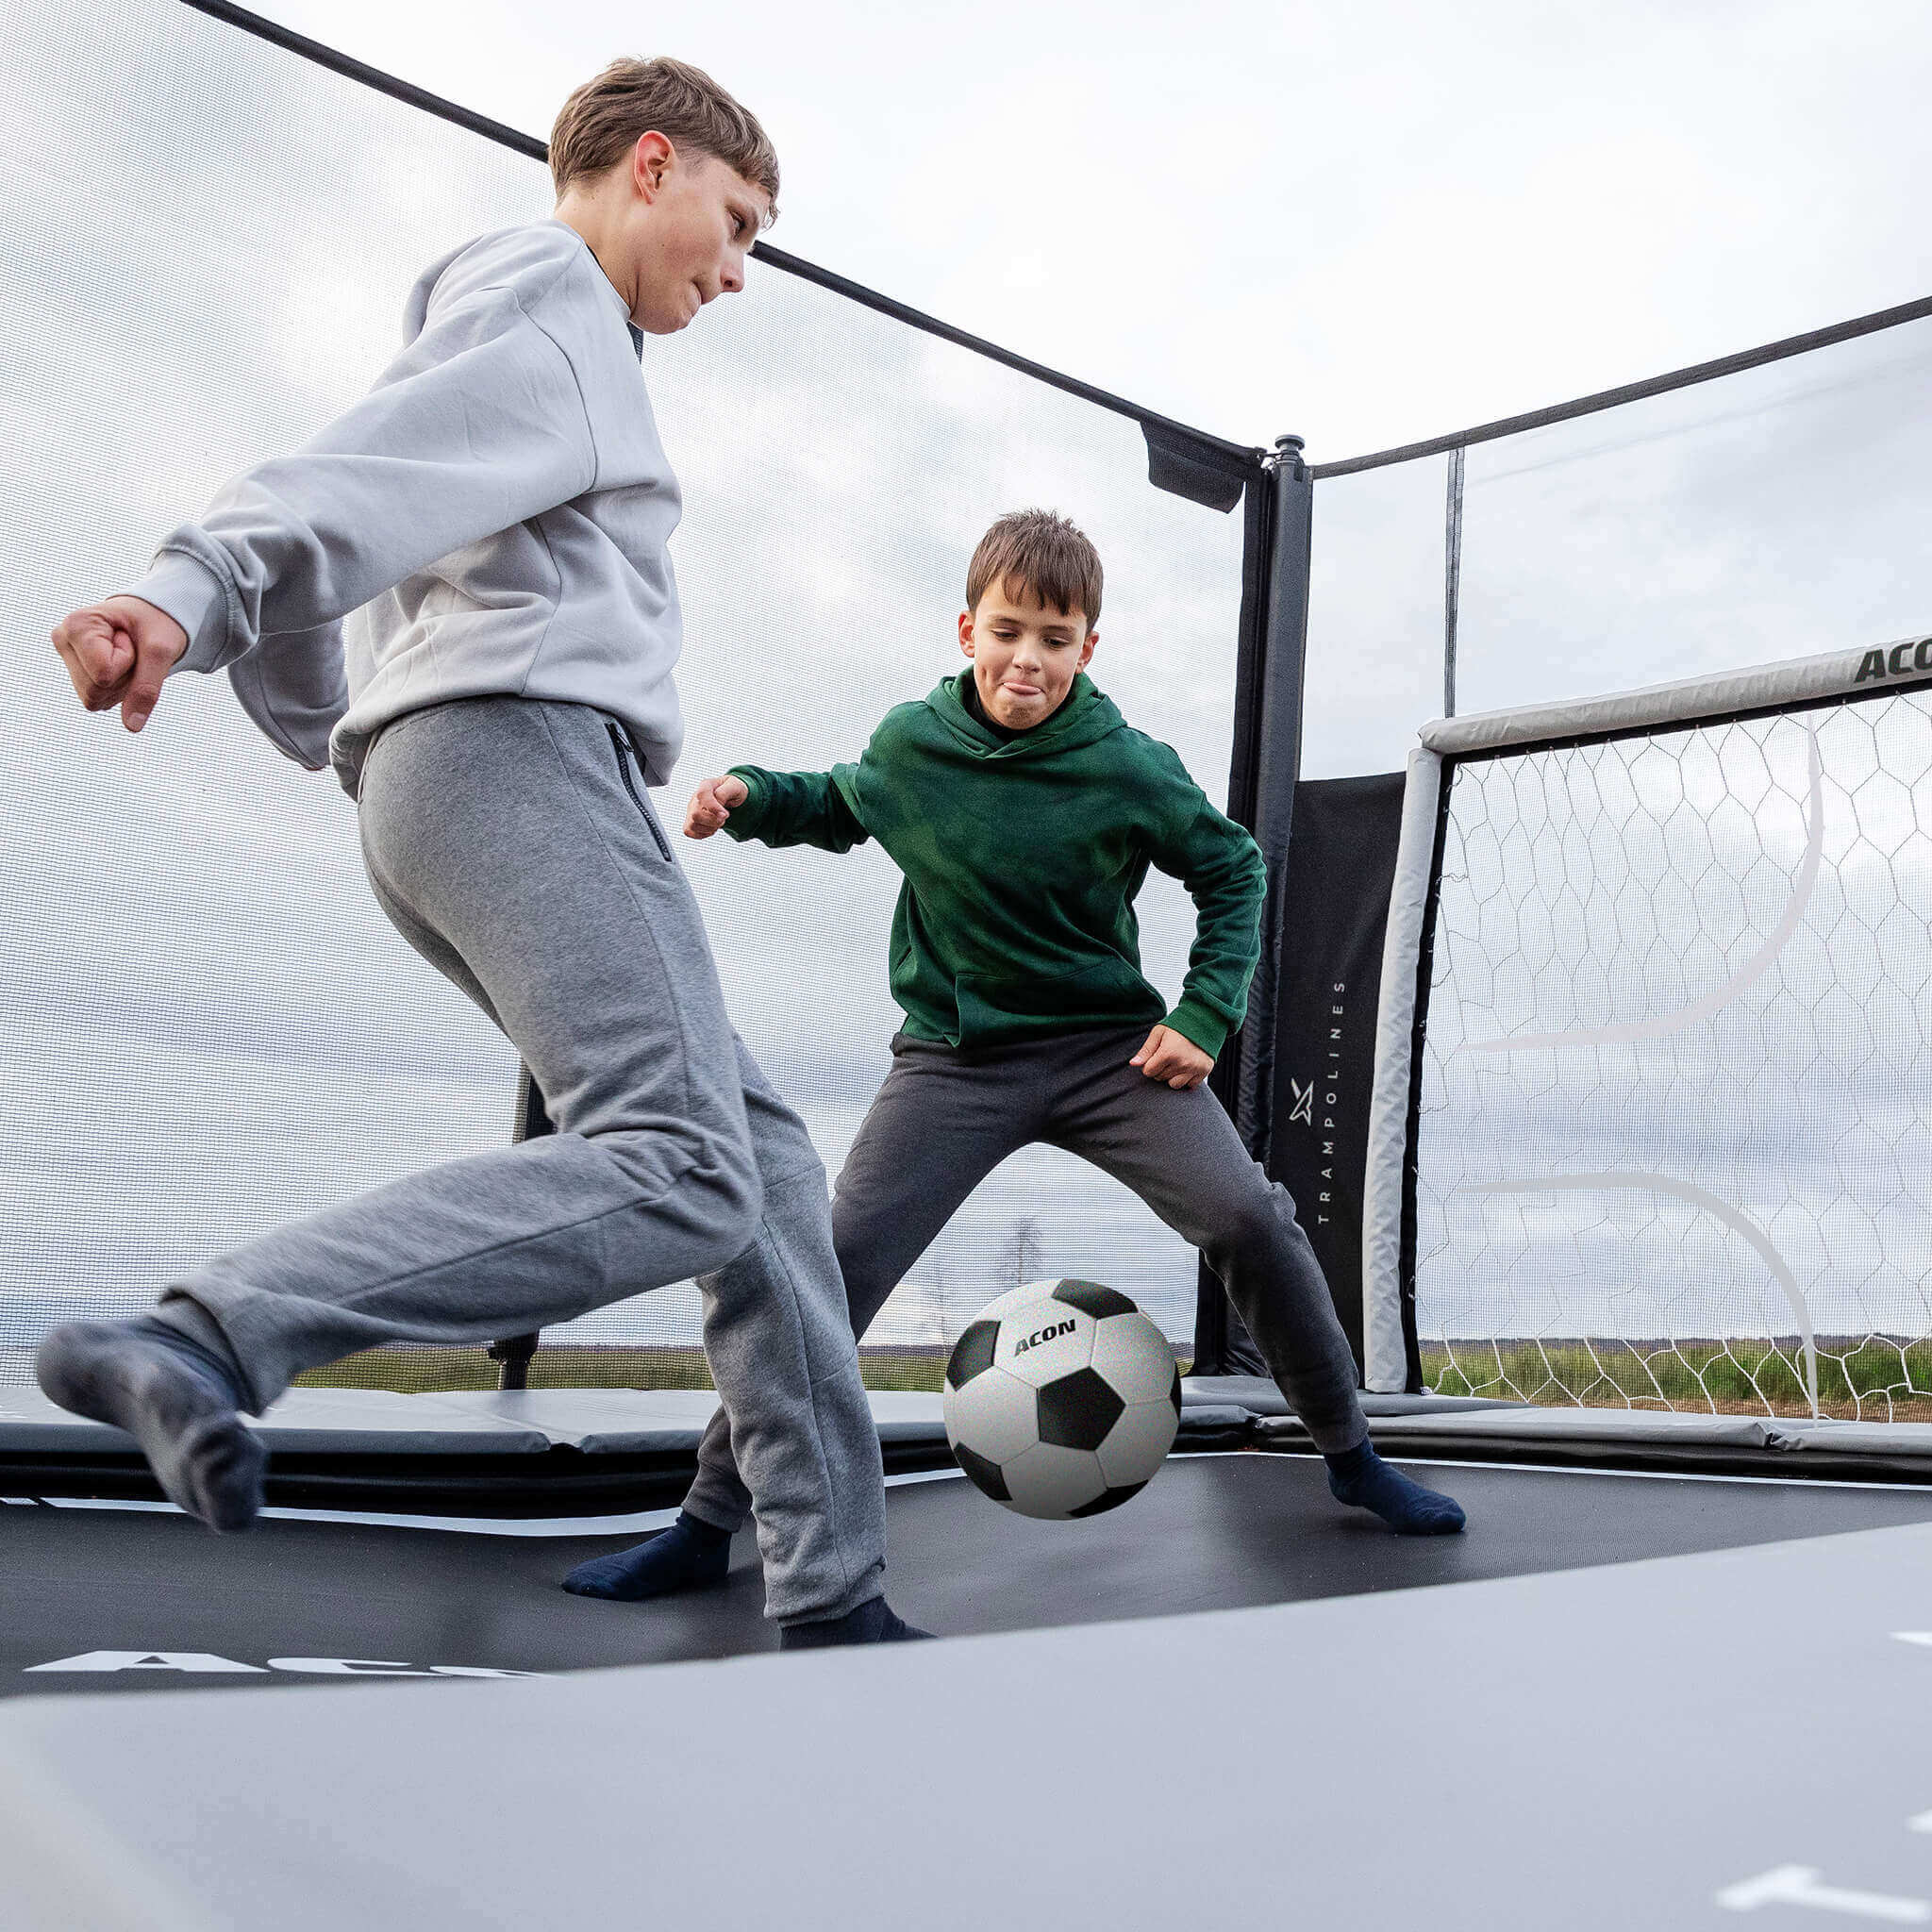 Kaksi poikaa pelaa jalkapalloa Acon X 17 -trampoliinilla, jossa on jalkapallomaali